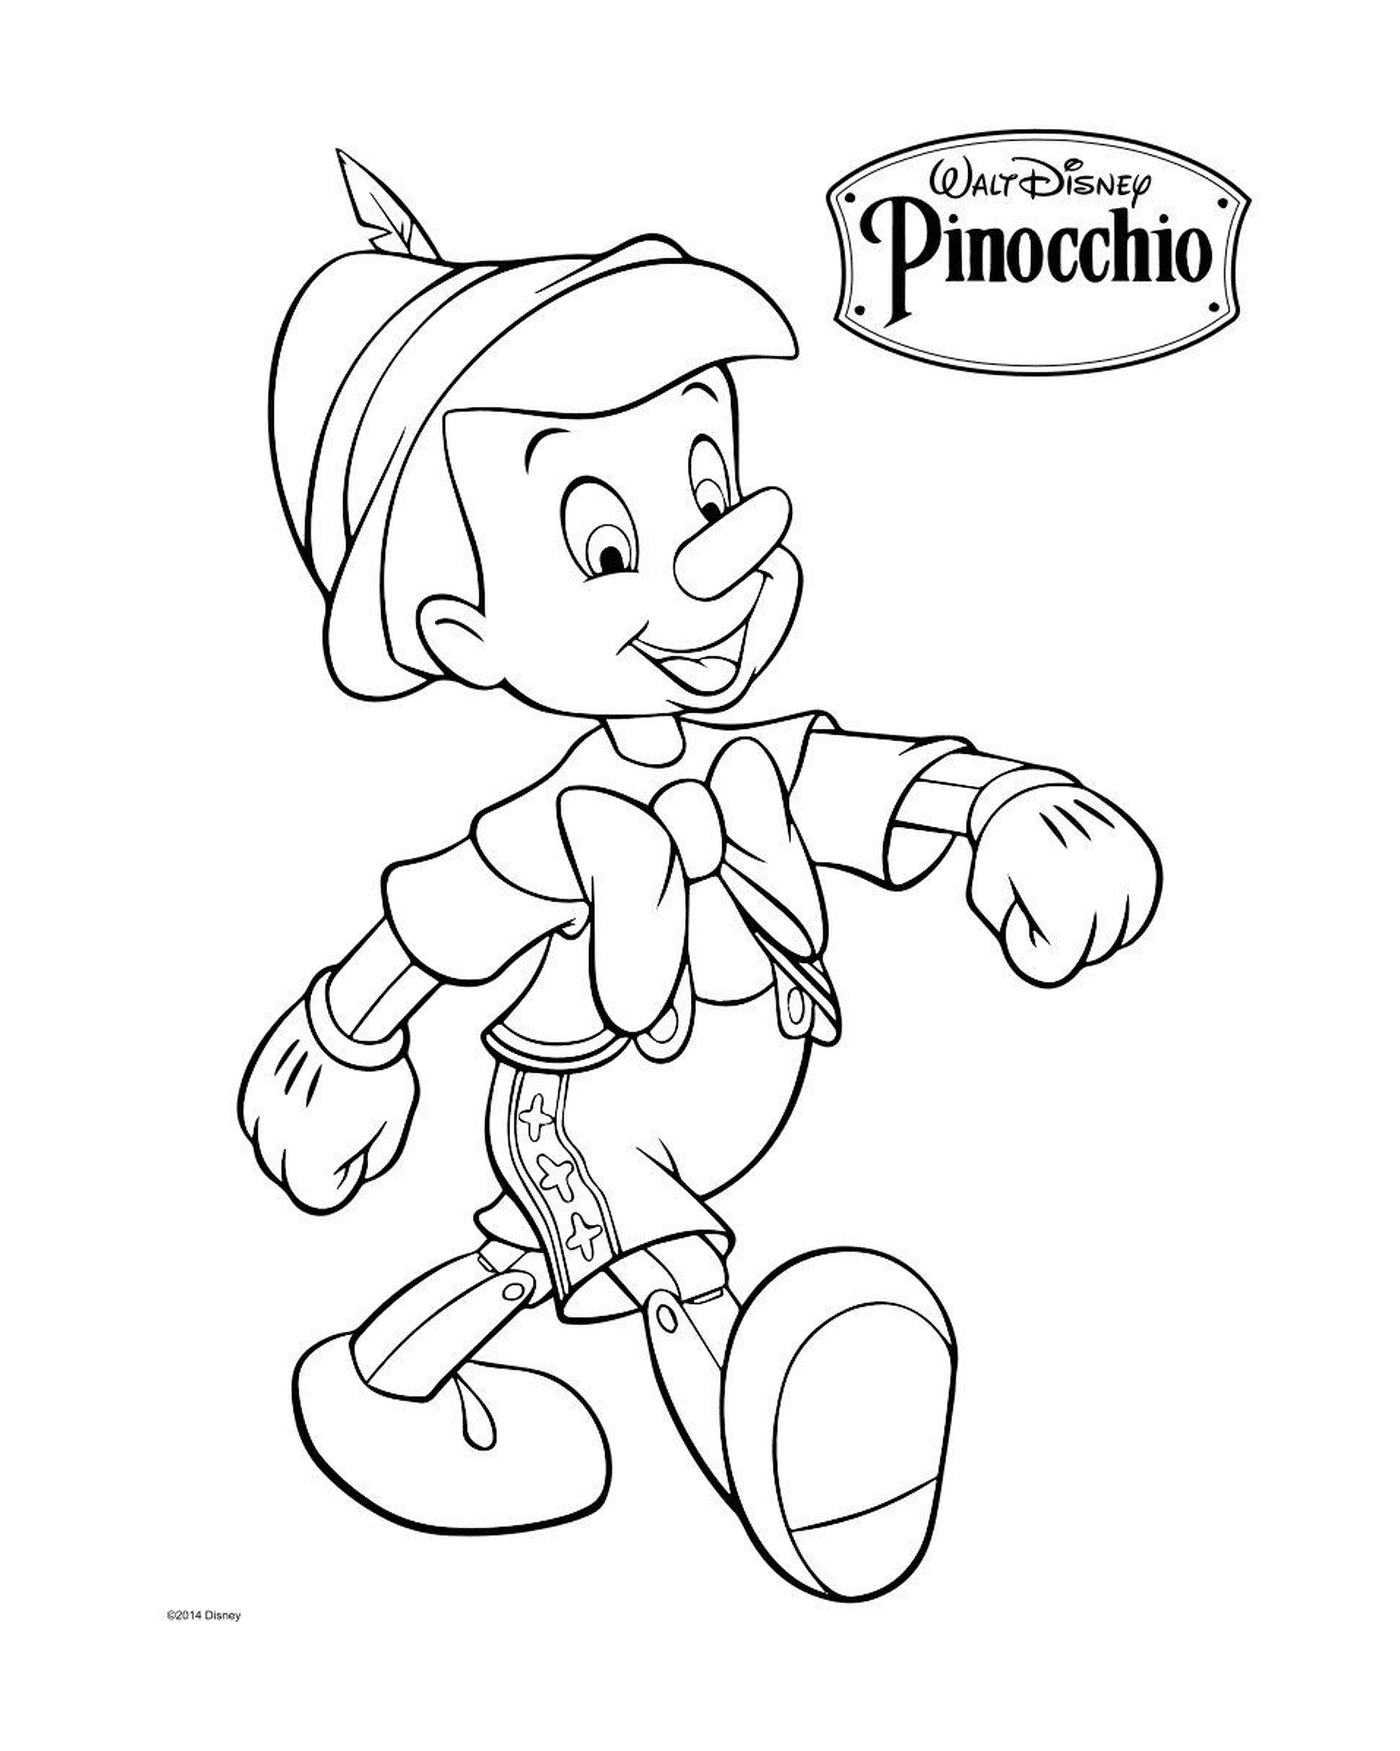  Geppetto, carpintero italiano, fabrica un títere Pinocho 